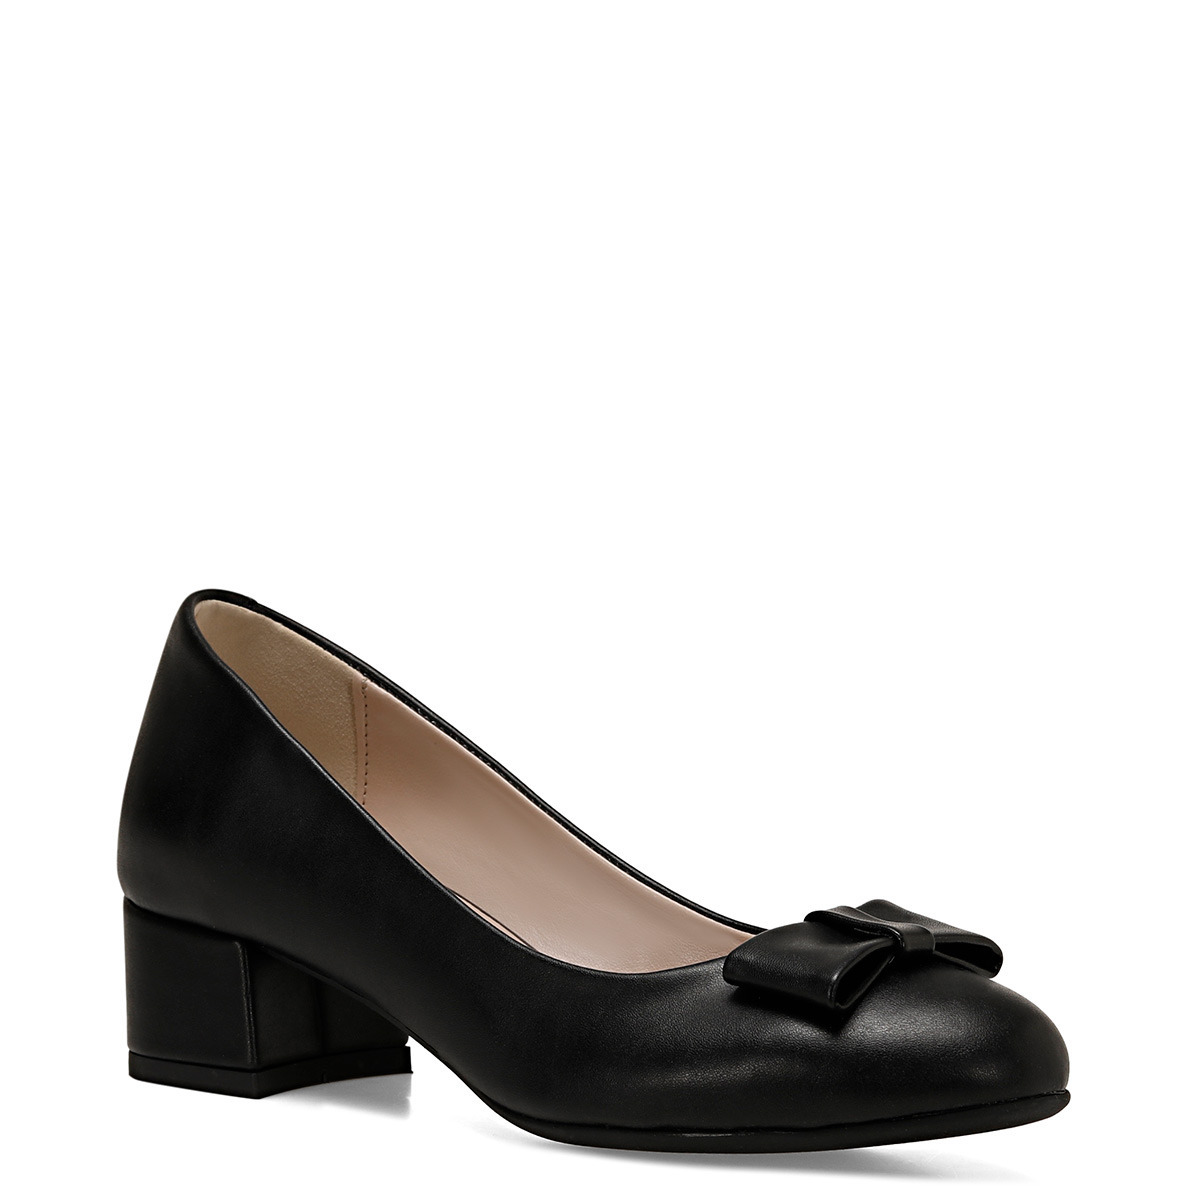 Flo LENIO Siyah Kadın Klasik Topuklu Ayakkabı. 2